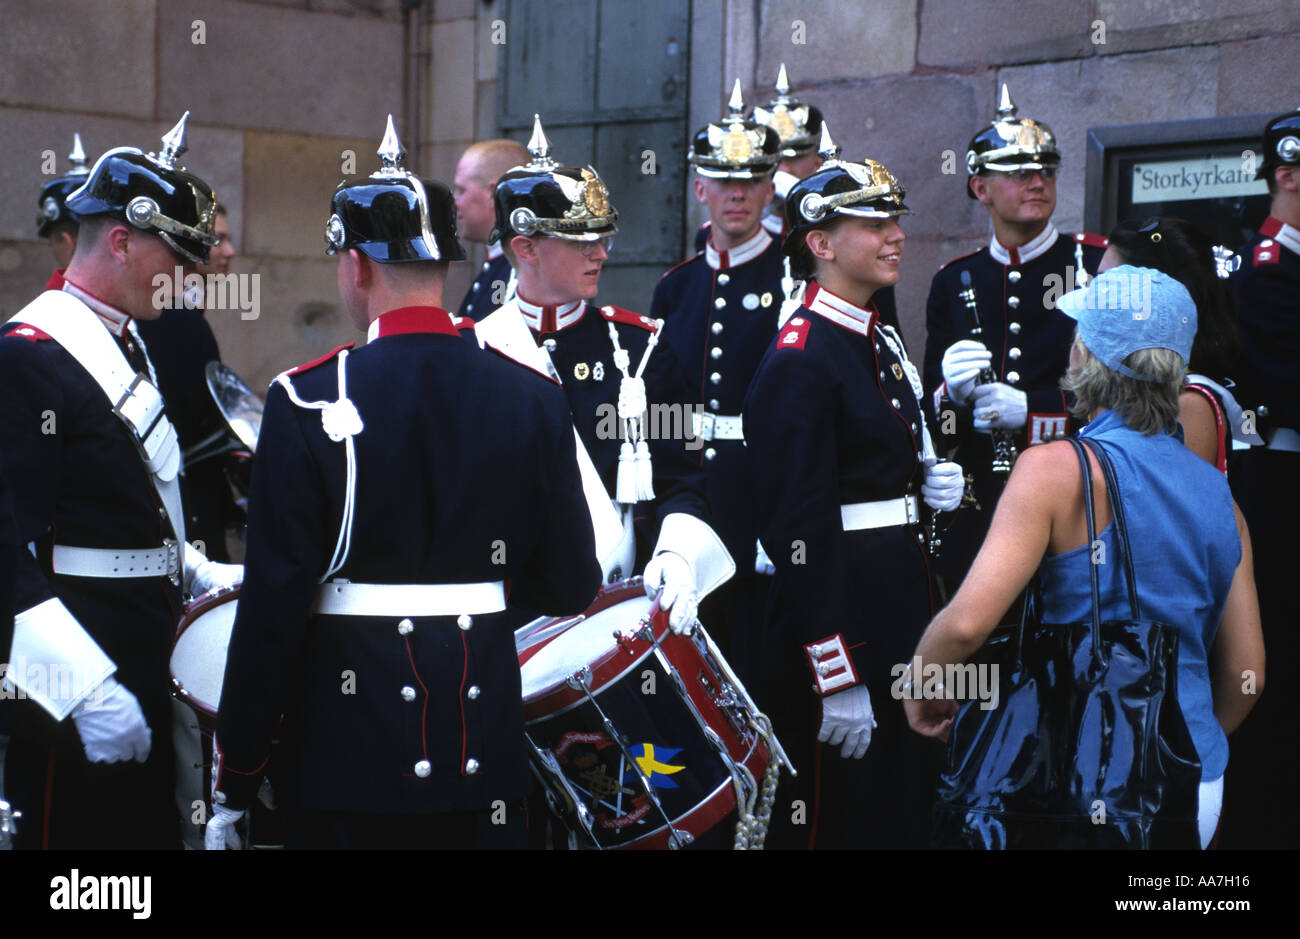 Banda del Ejército Sueco en Estocolmo Foto de stock